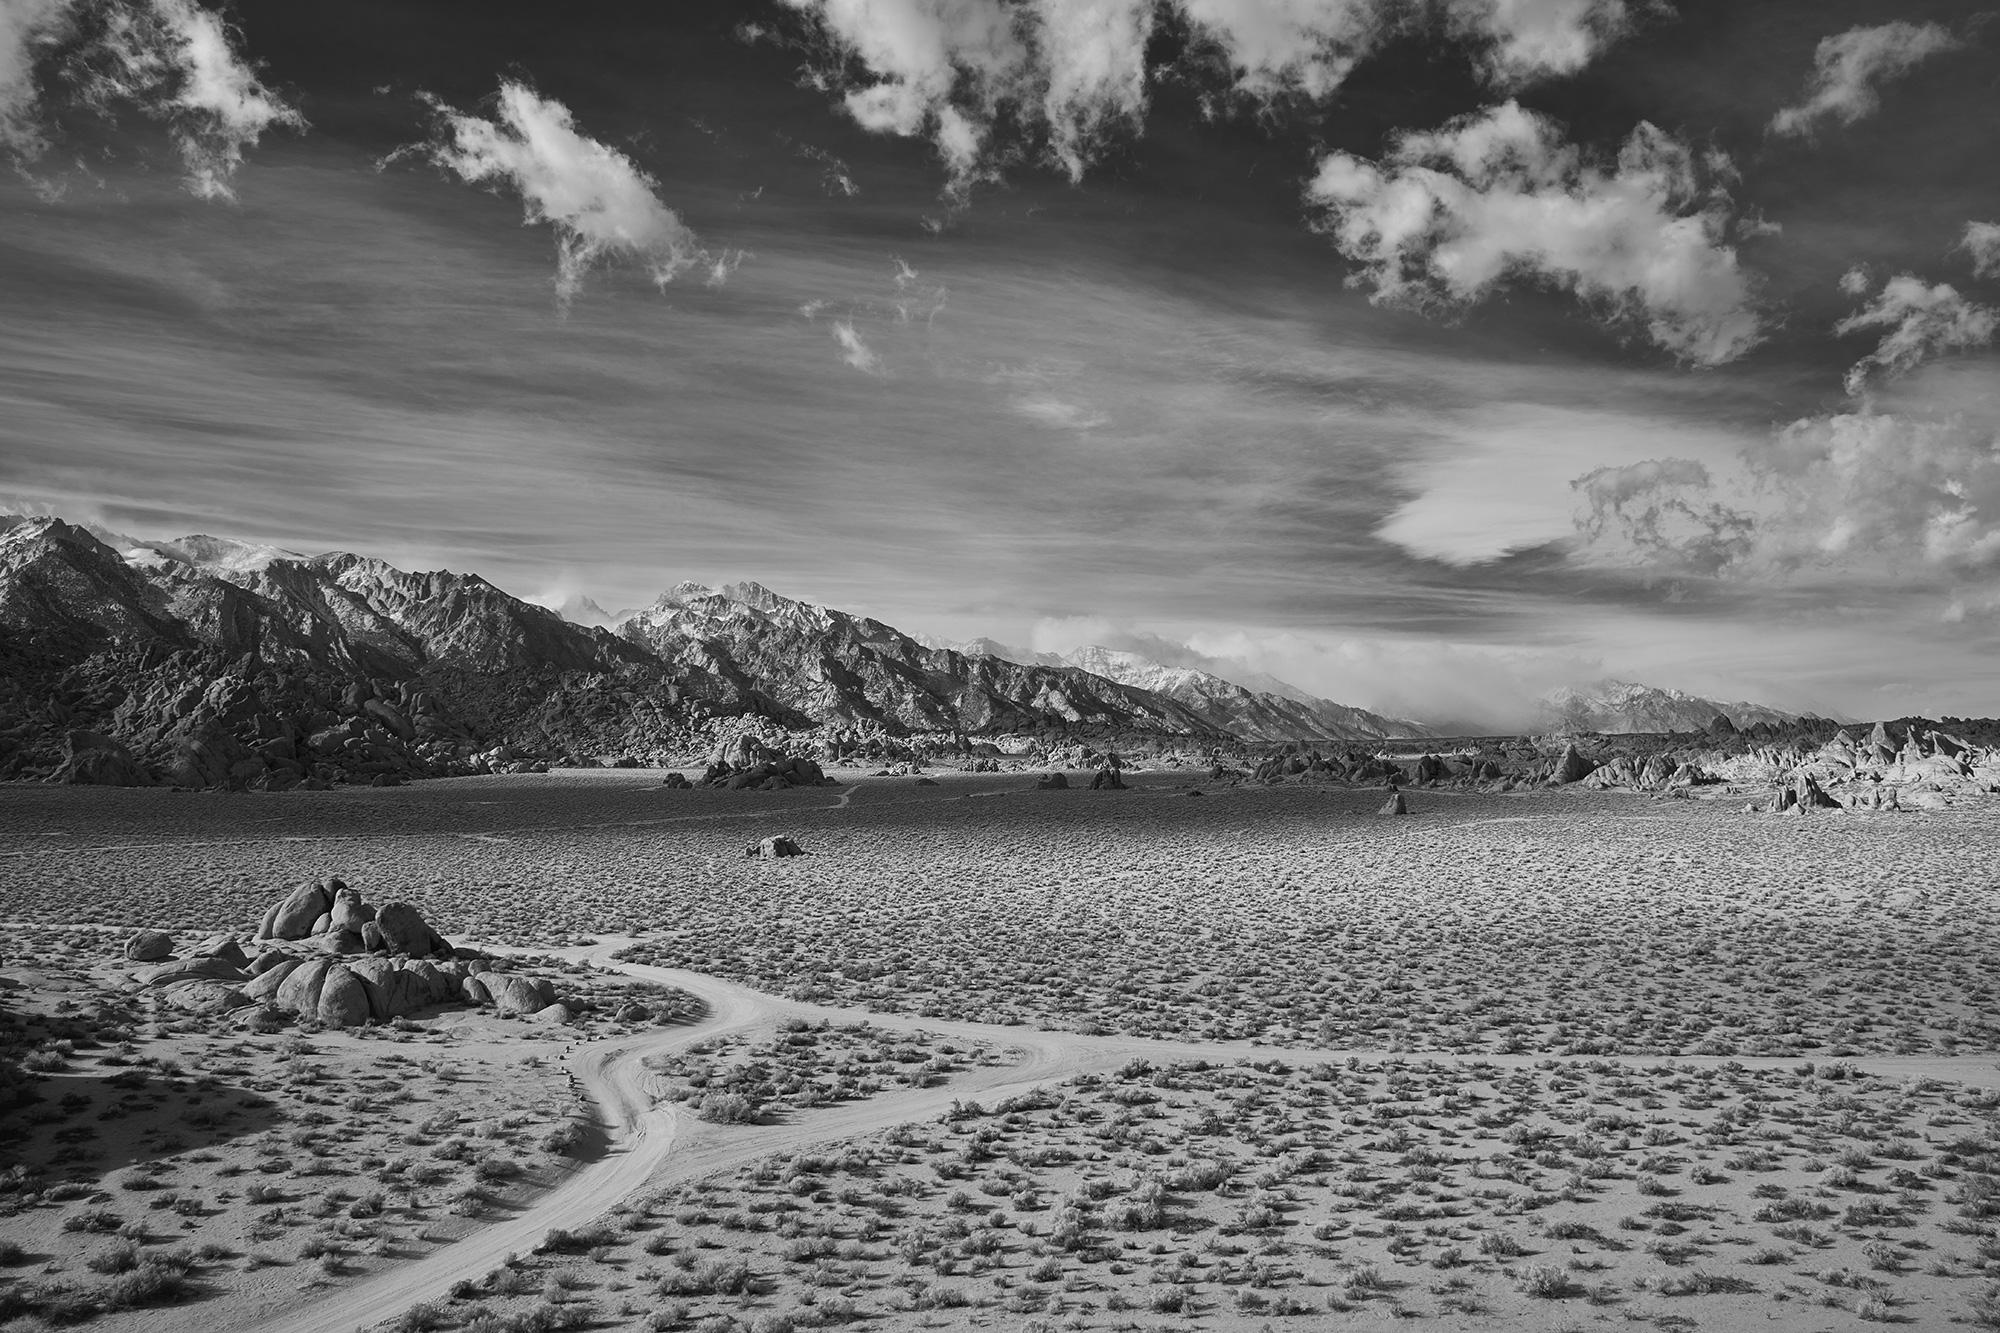 Desert Crossing - photo noir et blanc à grande échelle d'un paysage désertique dramatique